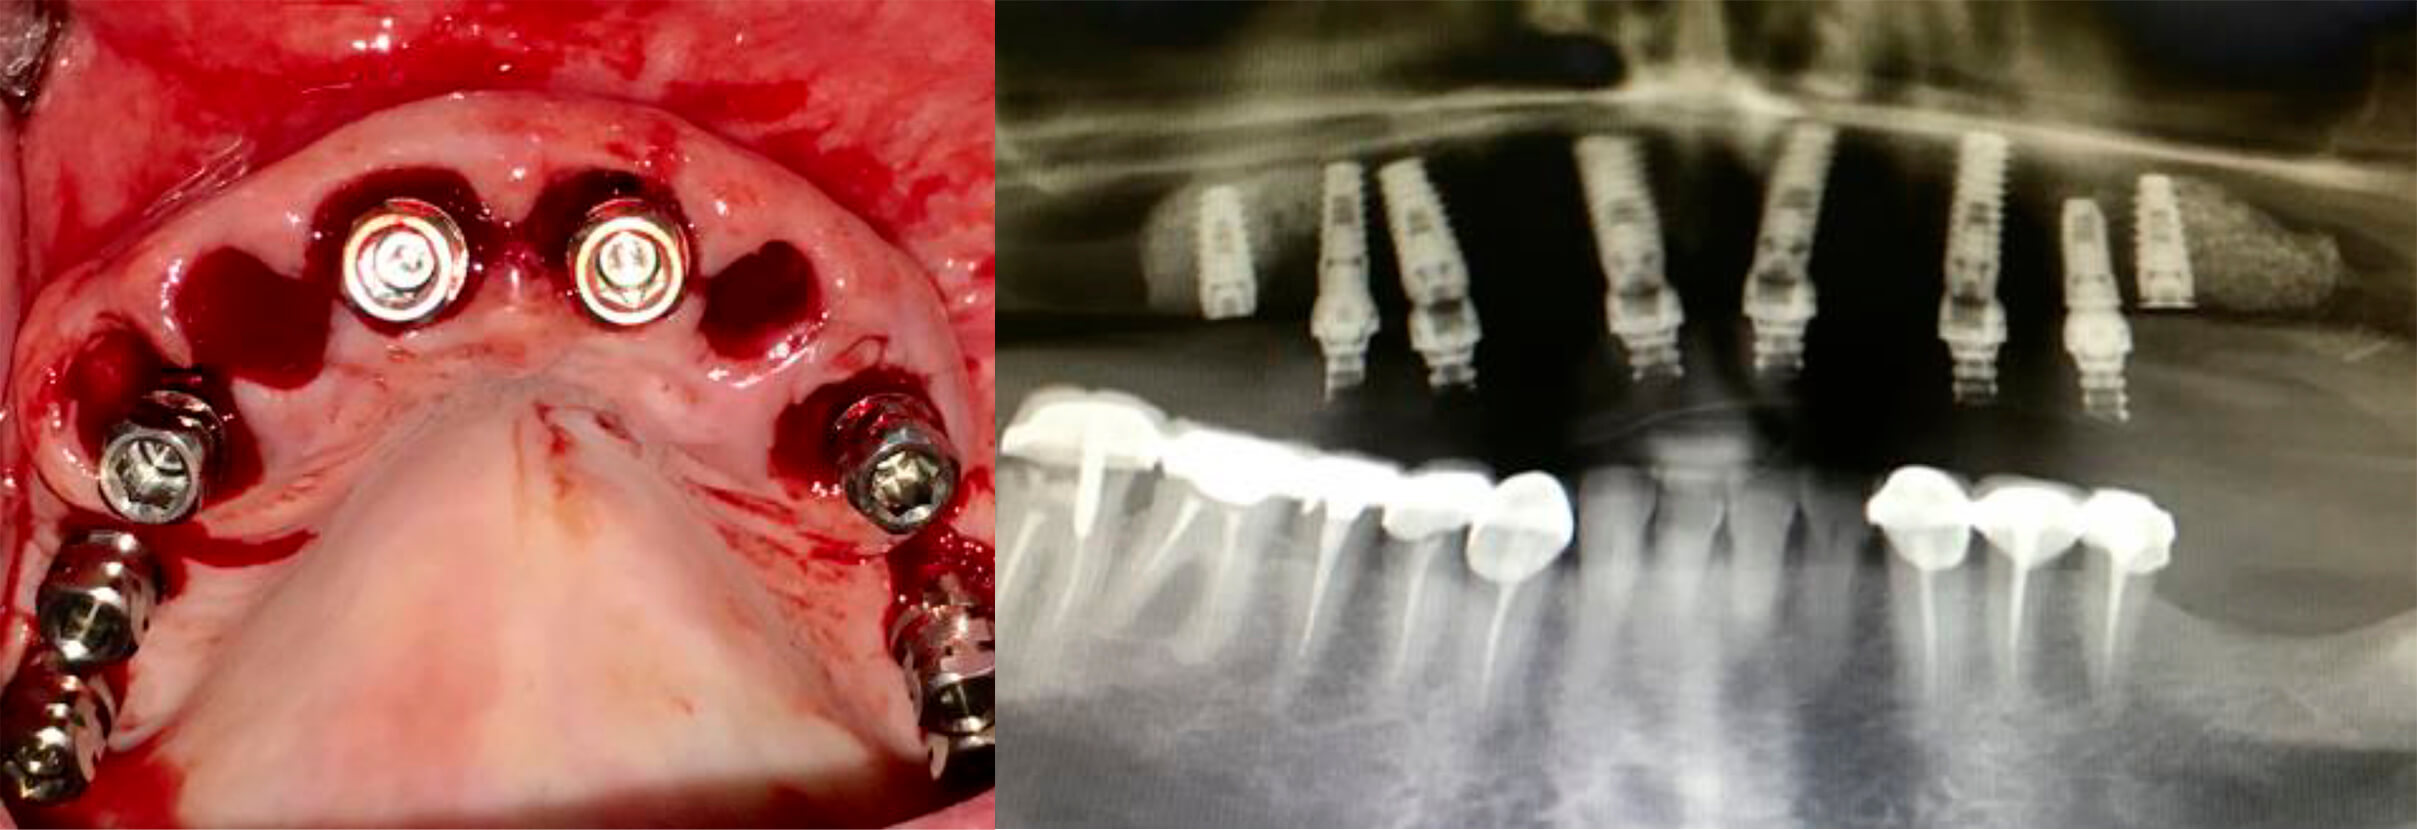 Implantes post-exodoncia en arcada superior y Rx de implantes y prótesis provisional atornillada